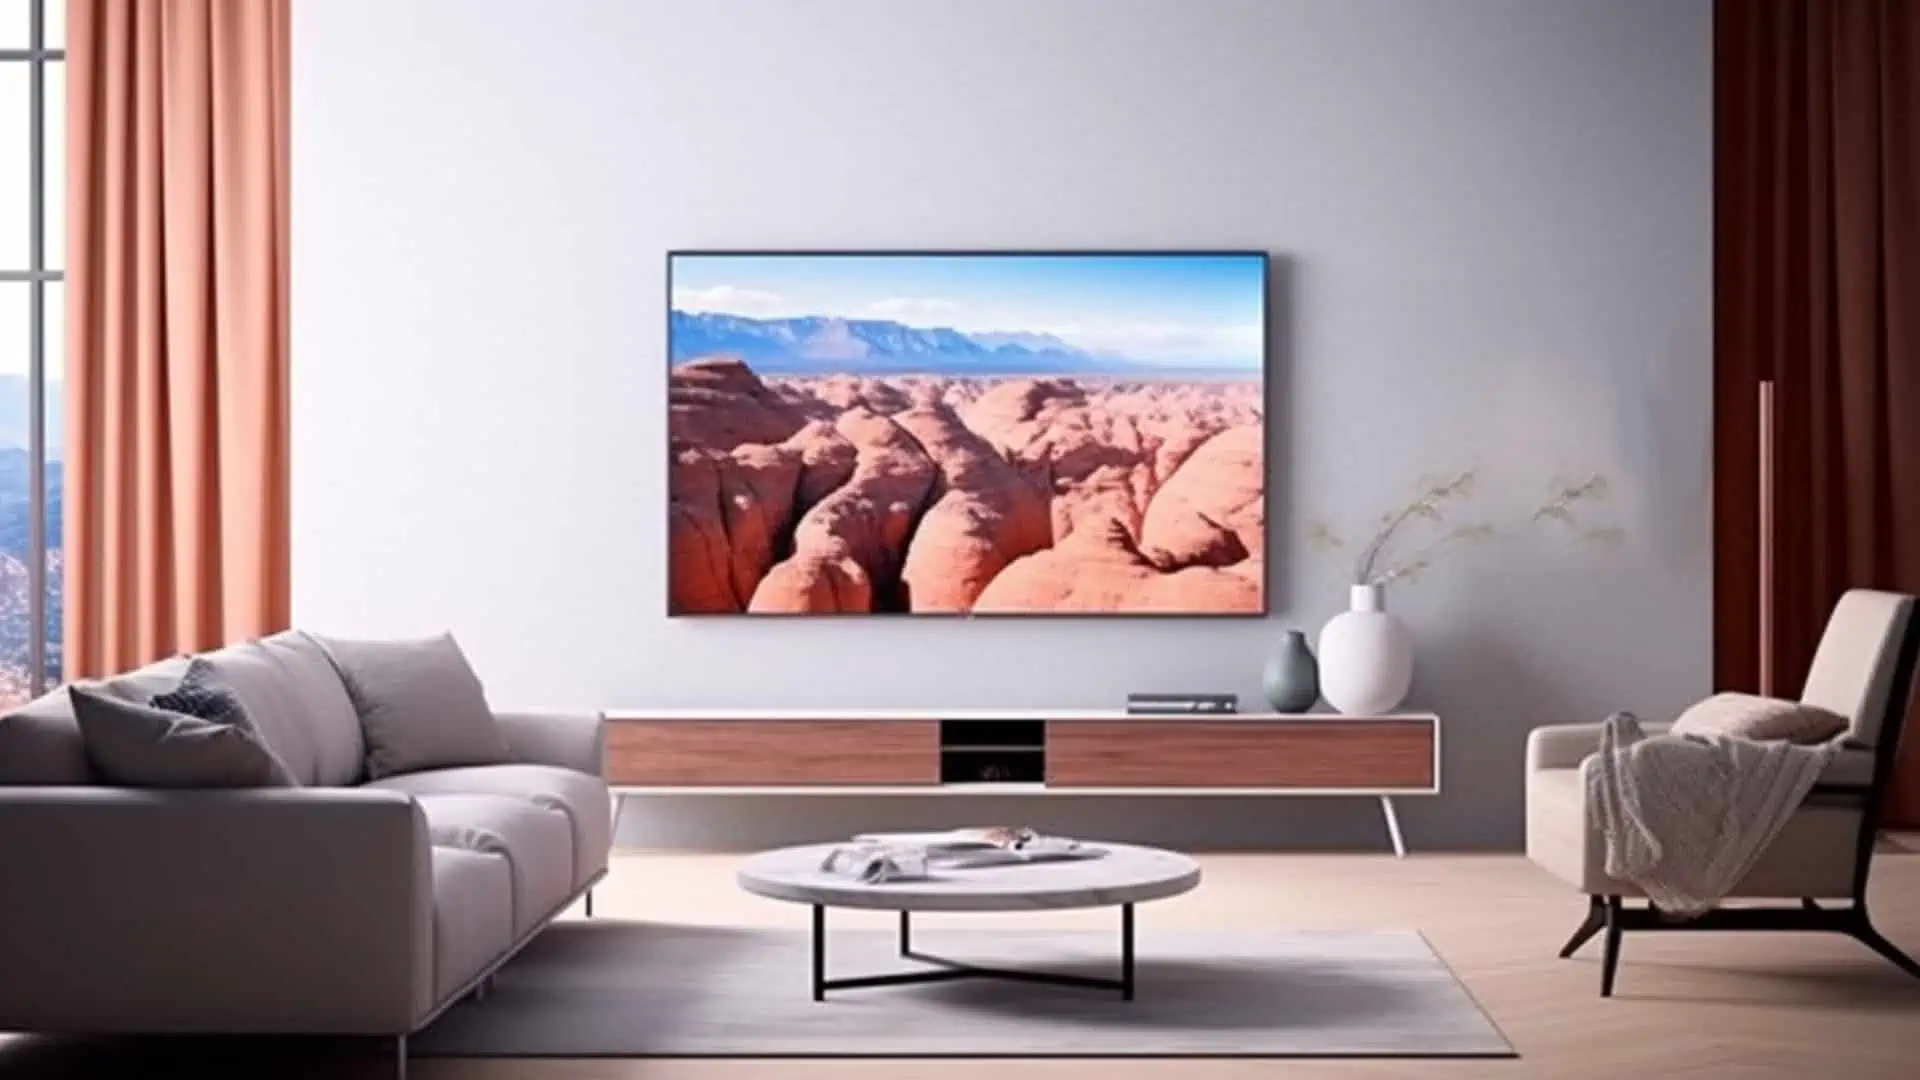 Een oled-tv in een woonkamer die op het scherm een vallei toont